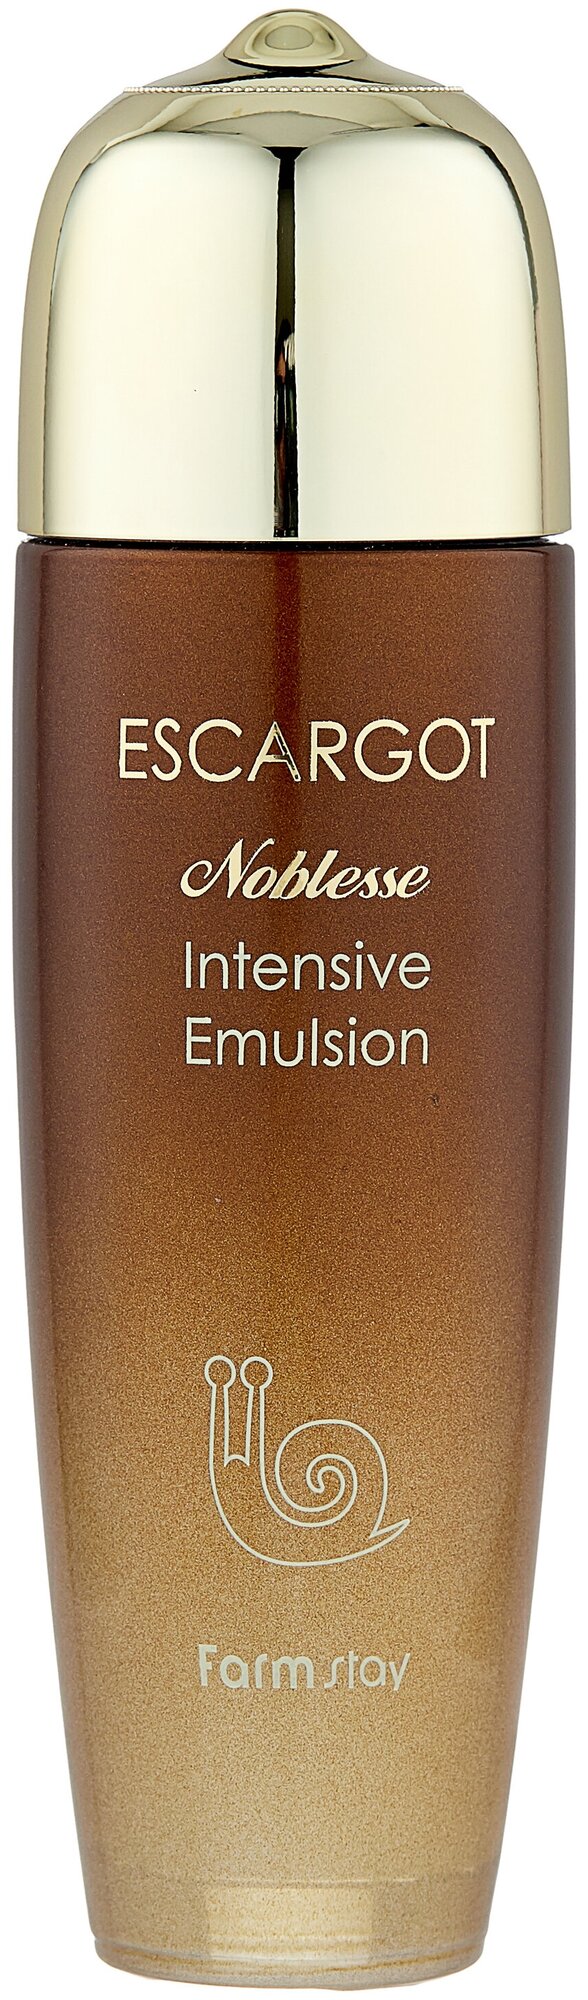 Farmstay Escargot Noblesse Intensive Emulsion Эмульсия для лица против морщин с экстрактом королевской улитки, 150 мл